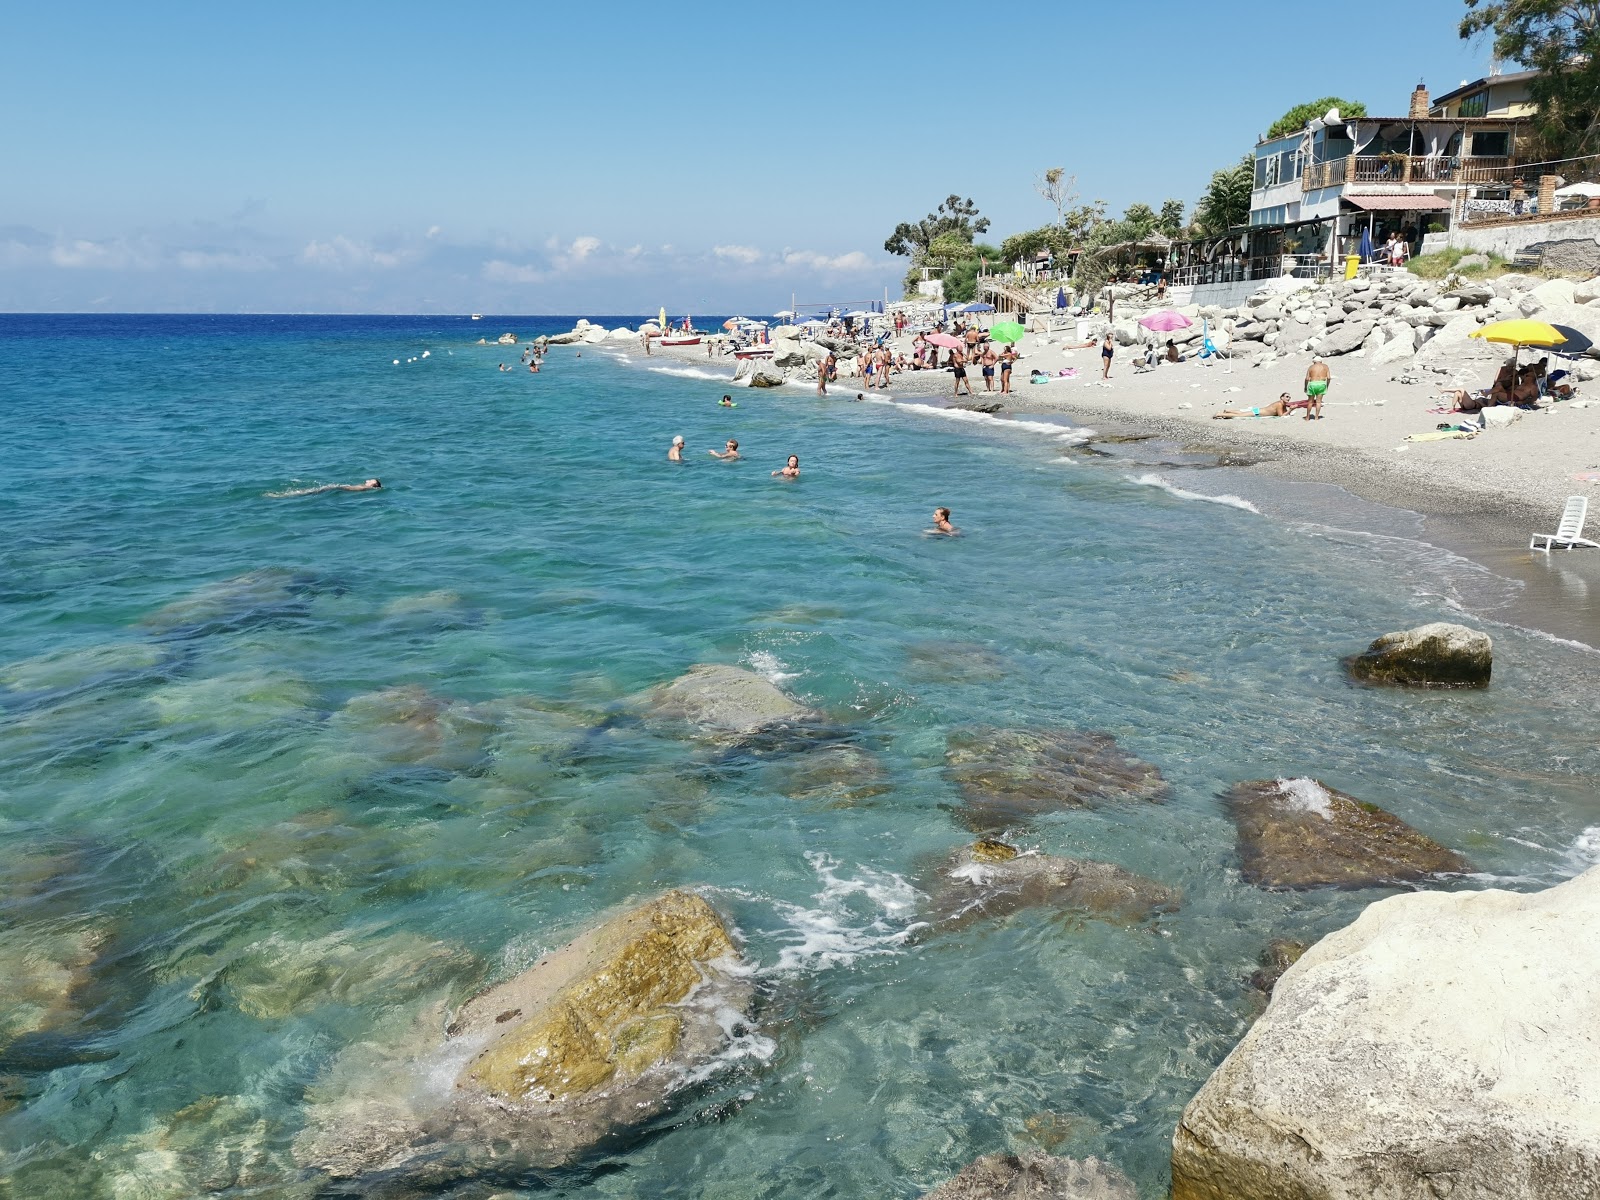 Spiaggia Calypso'in fotoğrafı gri ince çakıl taş yüzey ile